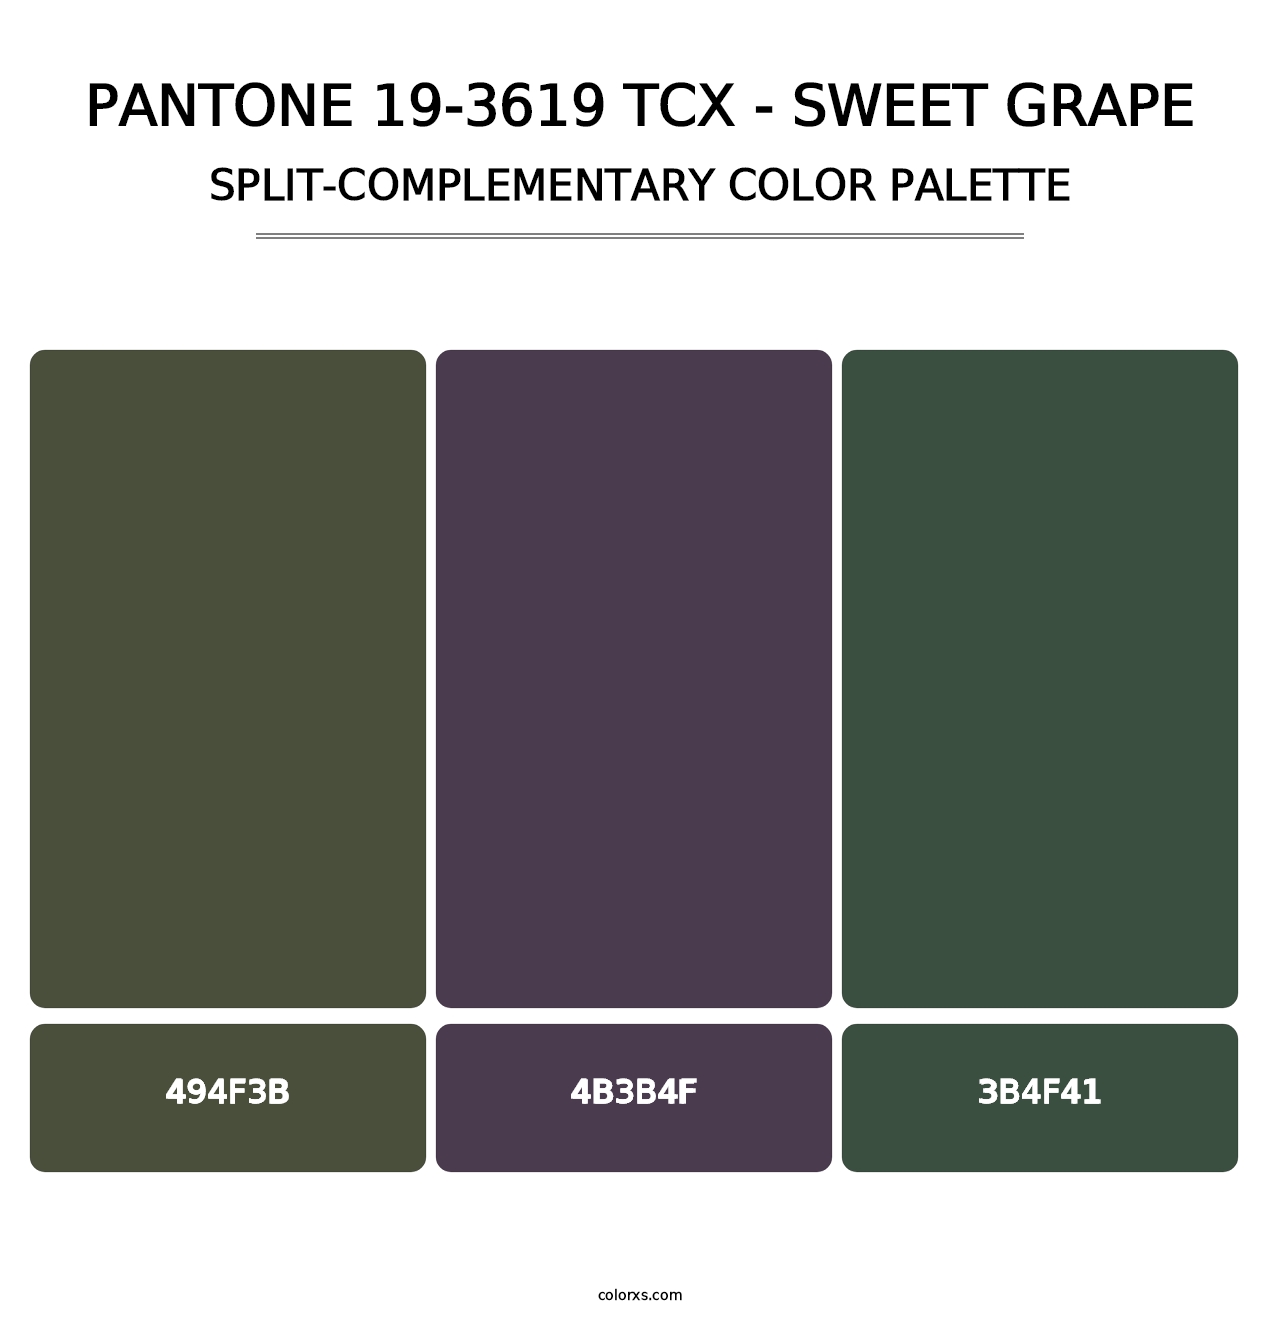 PANTONE 19-3619 TCX - Sweet Grape - Split-Complementary Color Palette